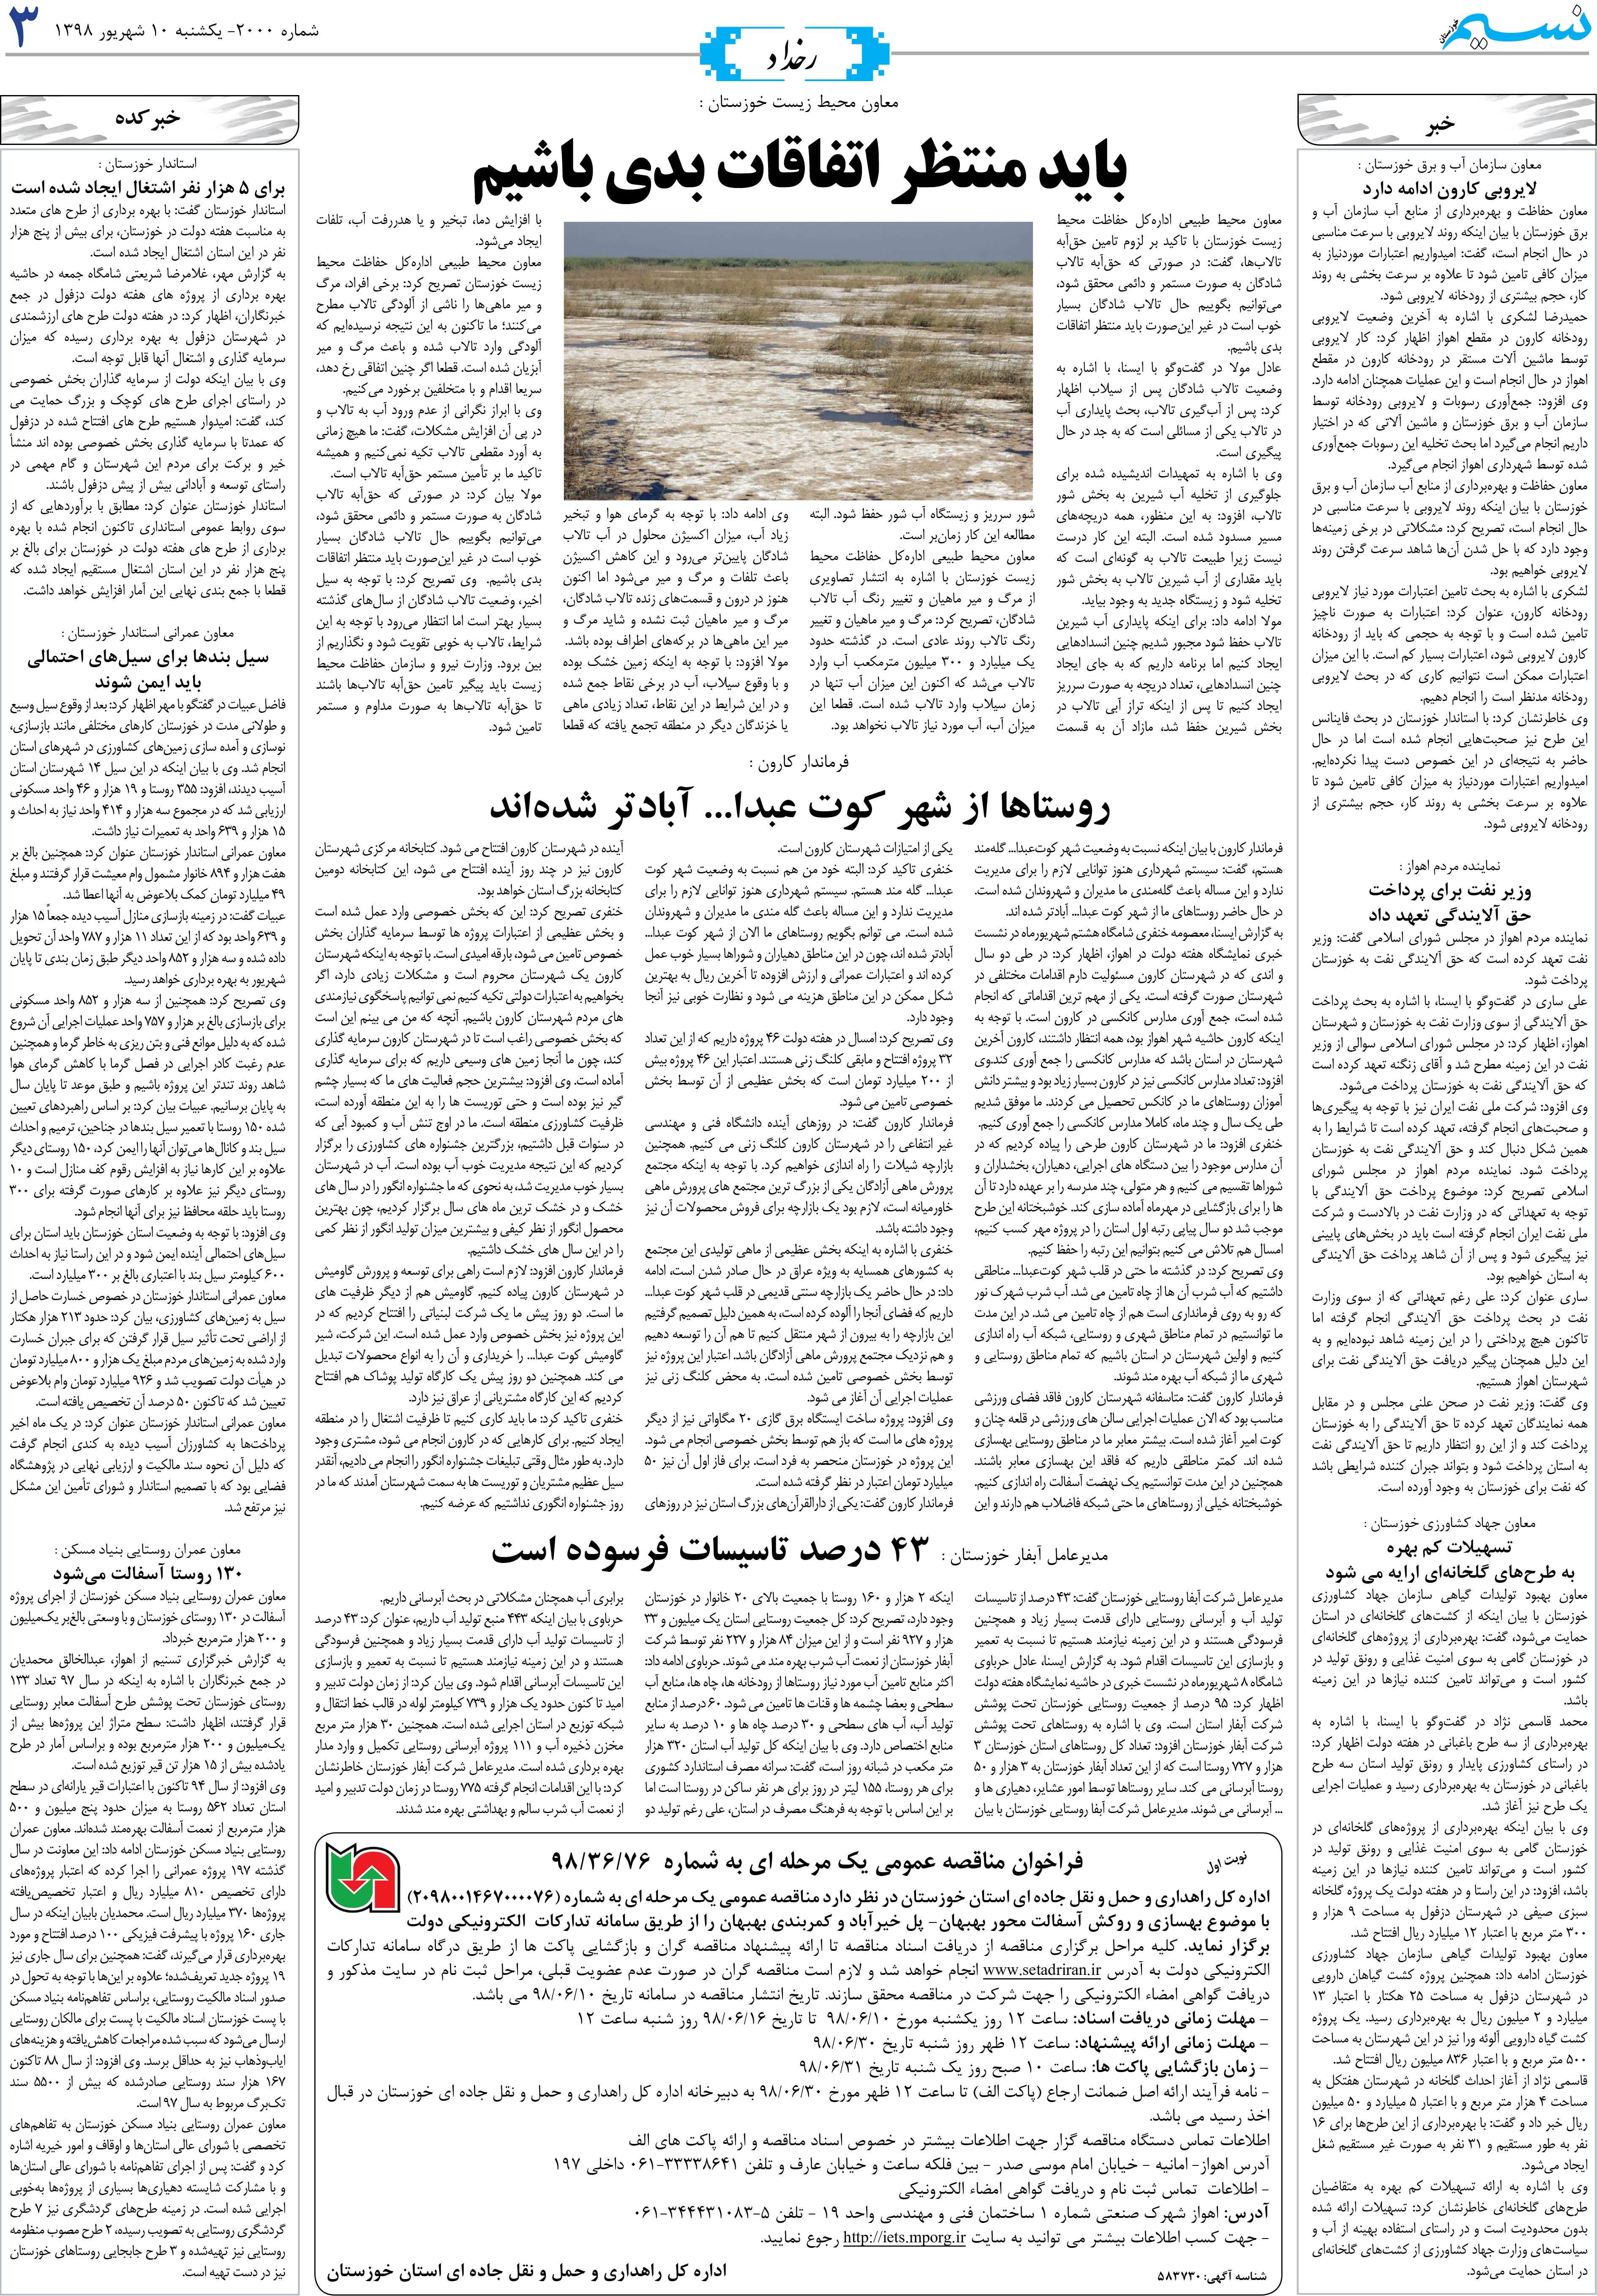 صفحه رخداد روزنامه نسیم شماره 2000